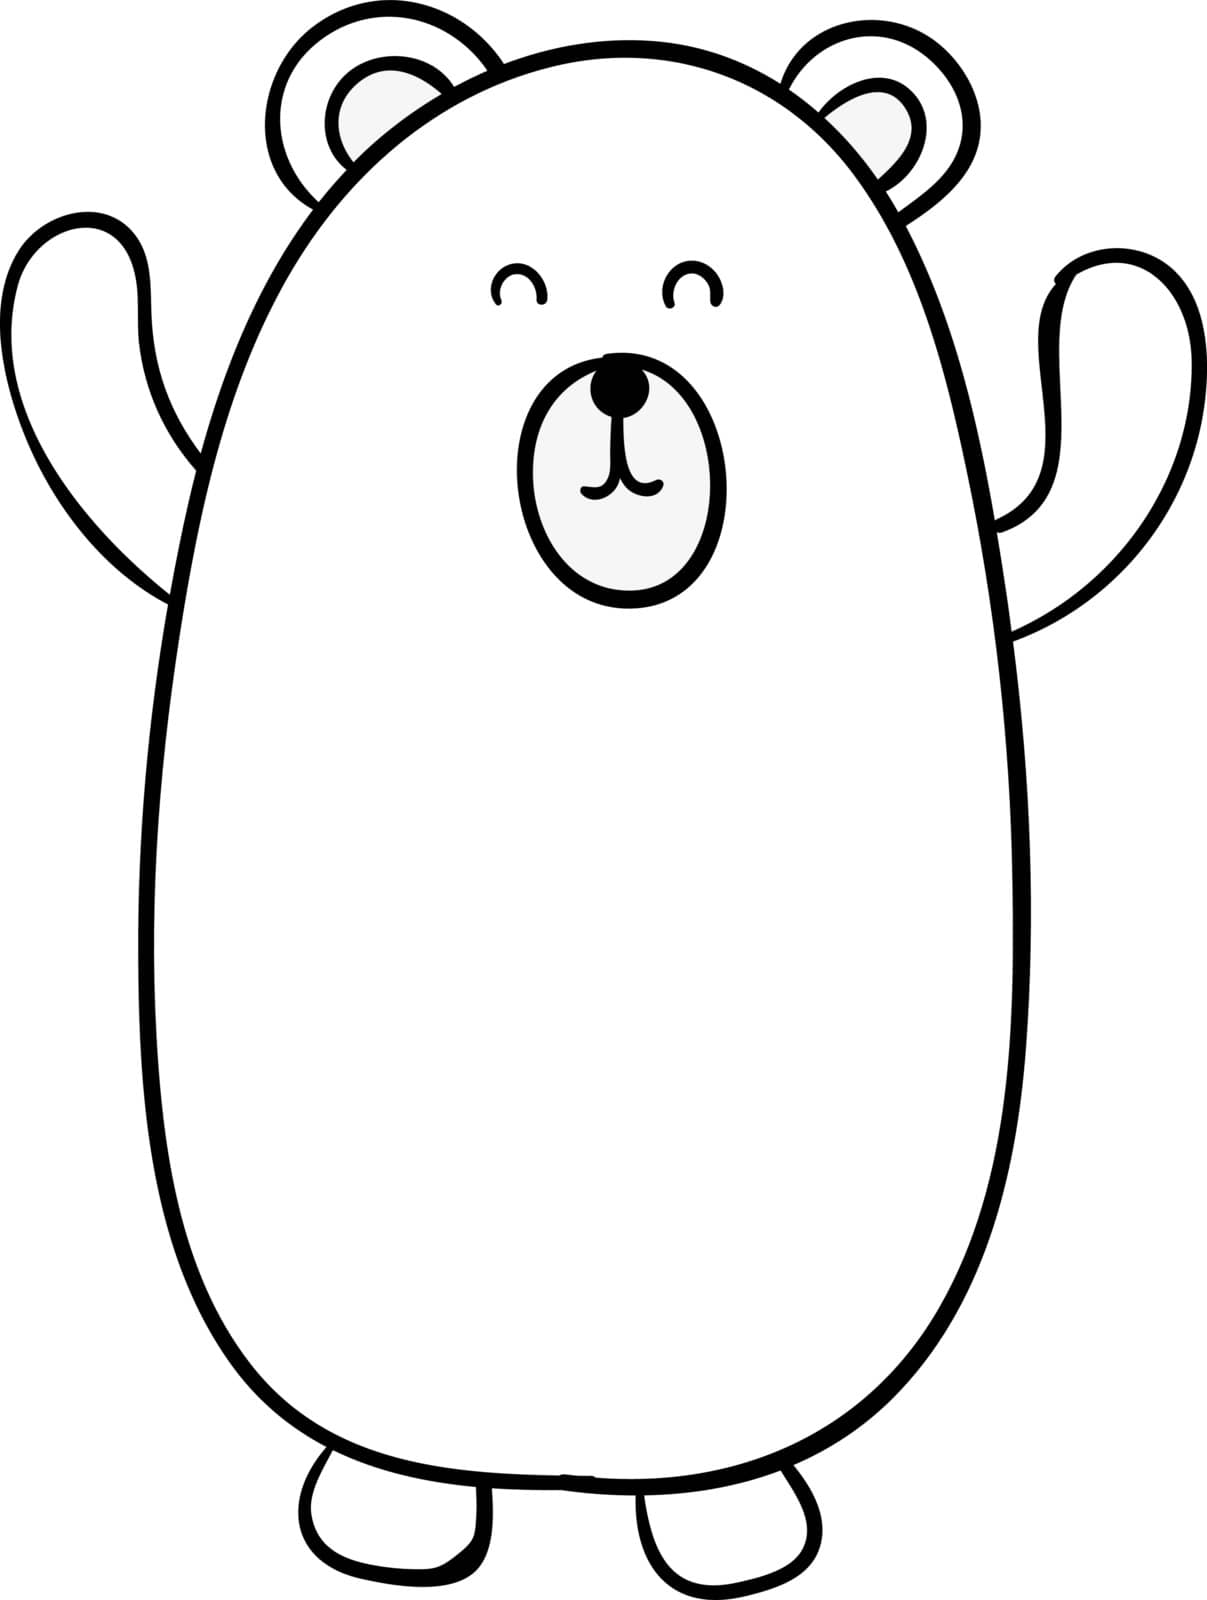 White bear, illustration, vector on white background. by Morphart